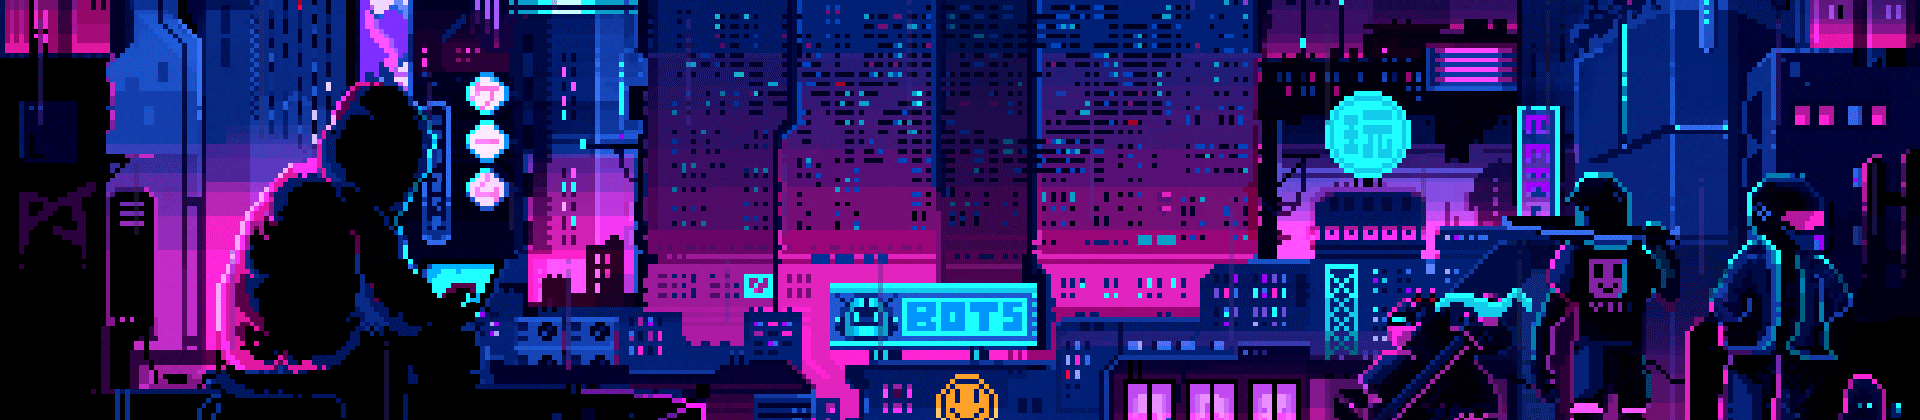 pixel-night-banner.gif